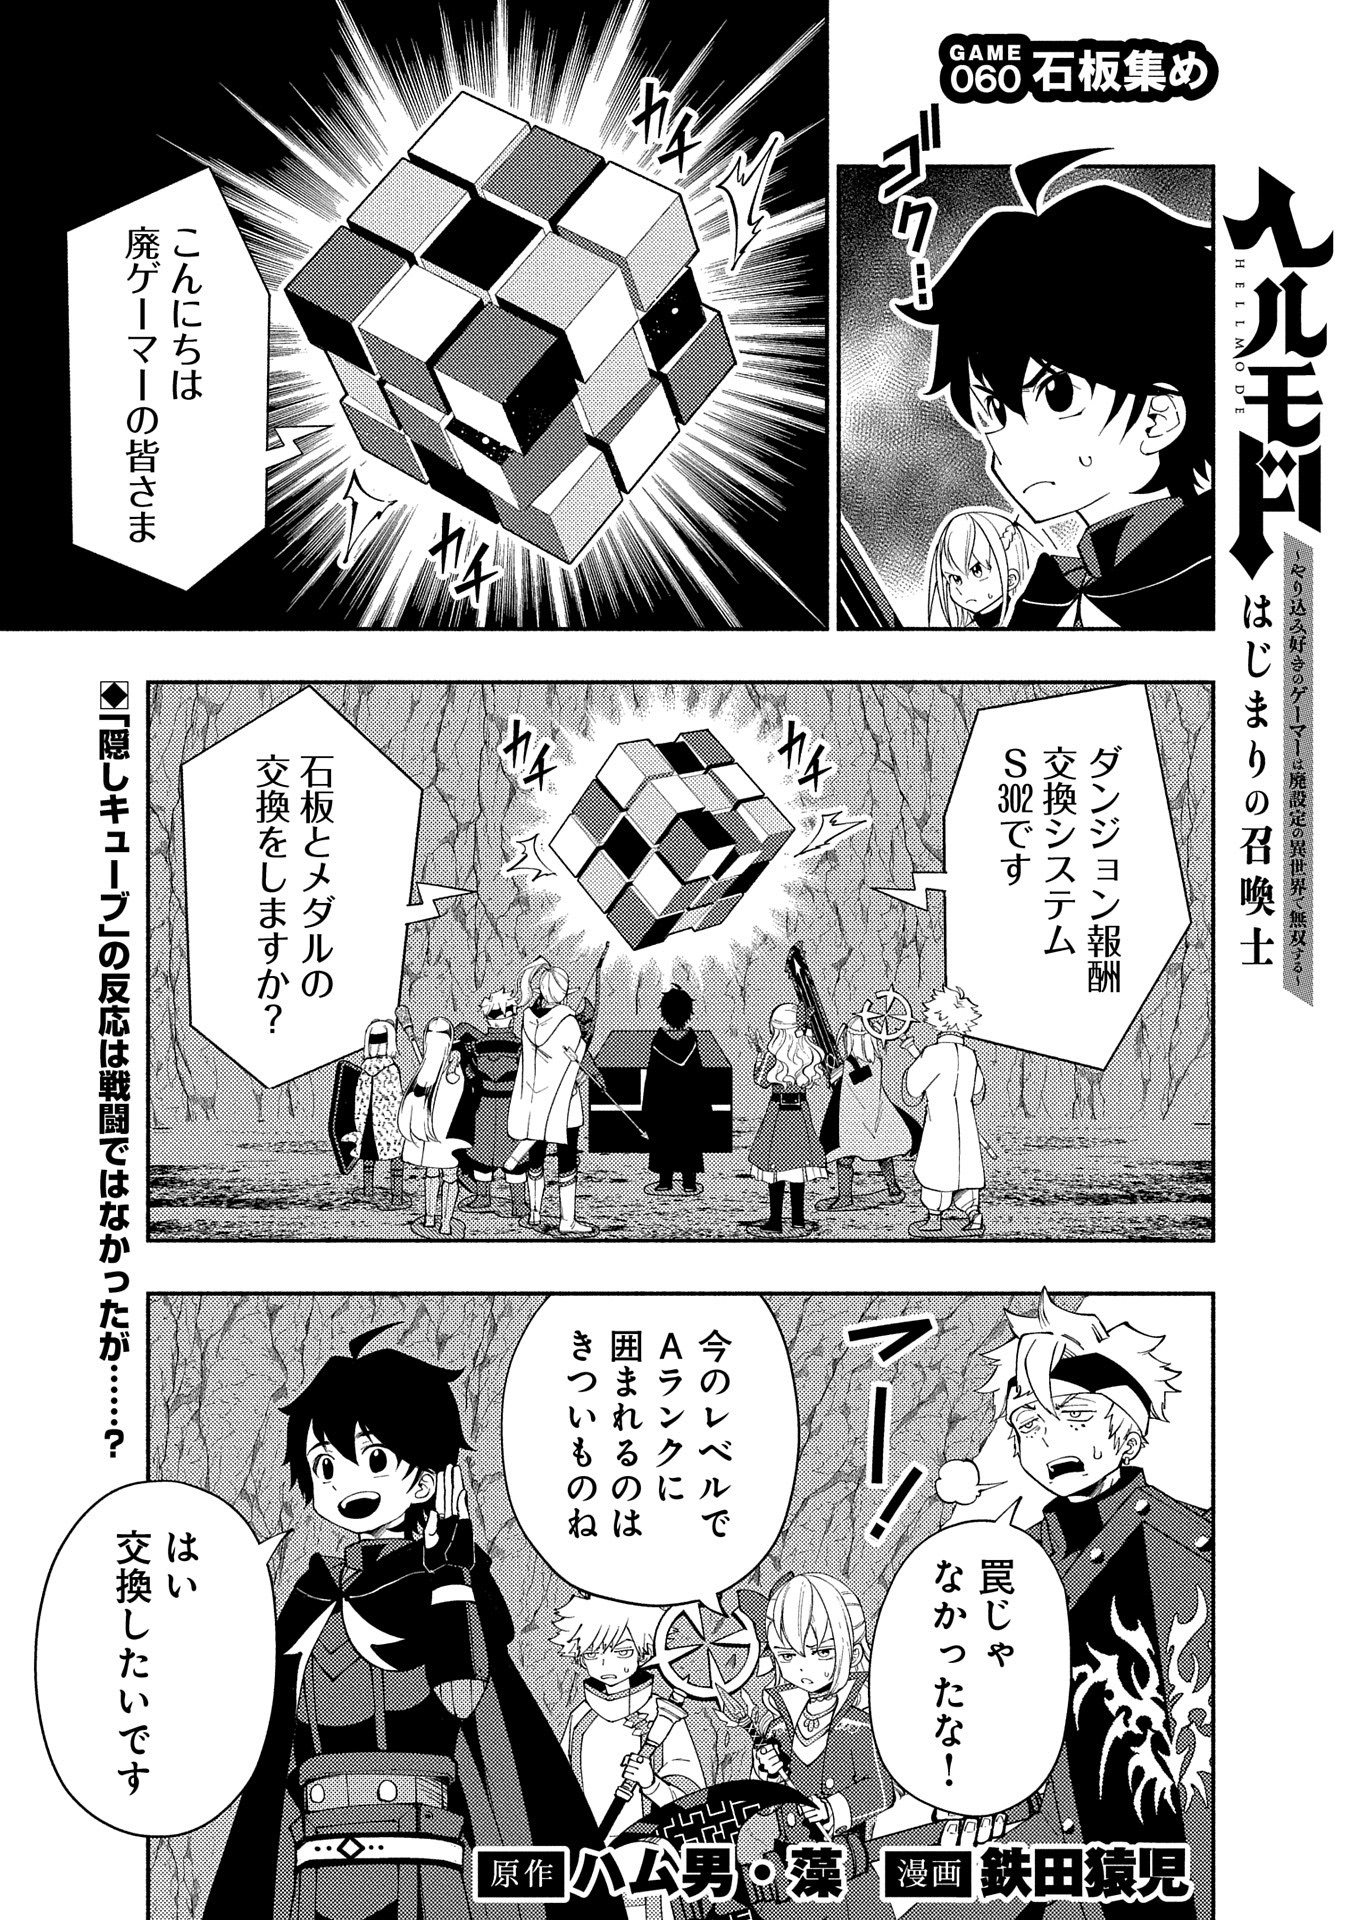 Hell Mode: Yarikomi Suki no Gamer wa Hai Settei no Isekai de Musou Suru - Chapter 60 - Page 1